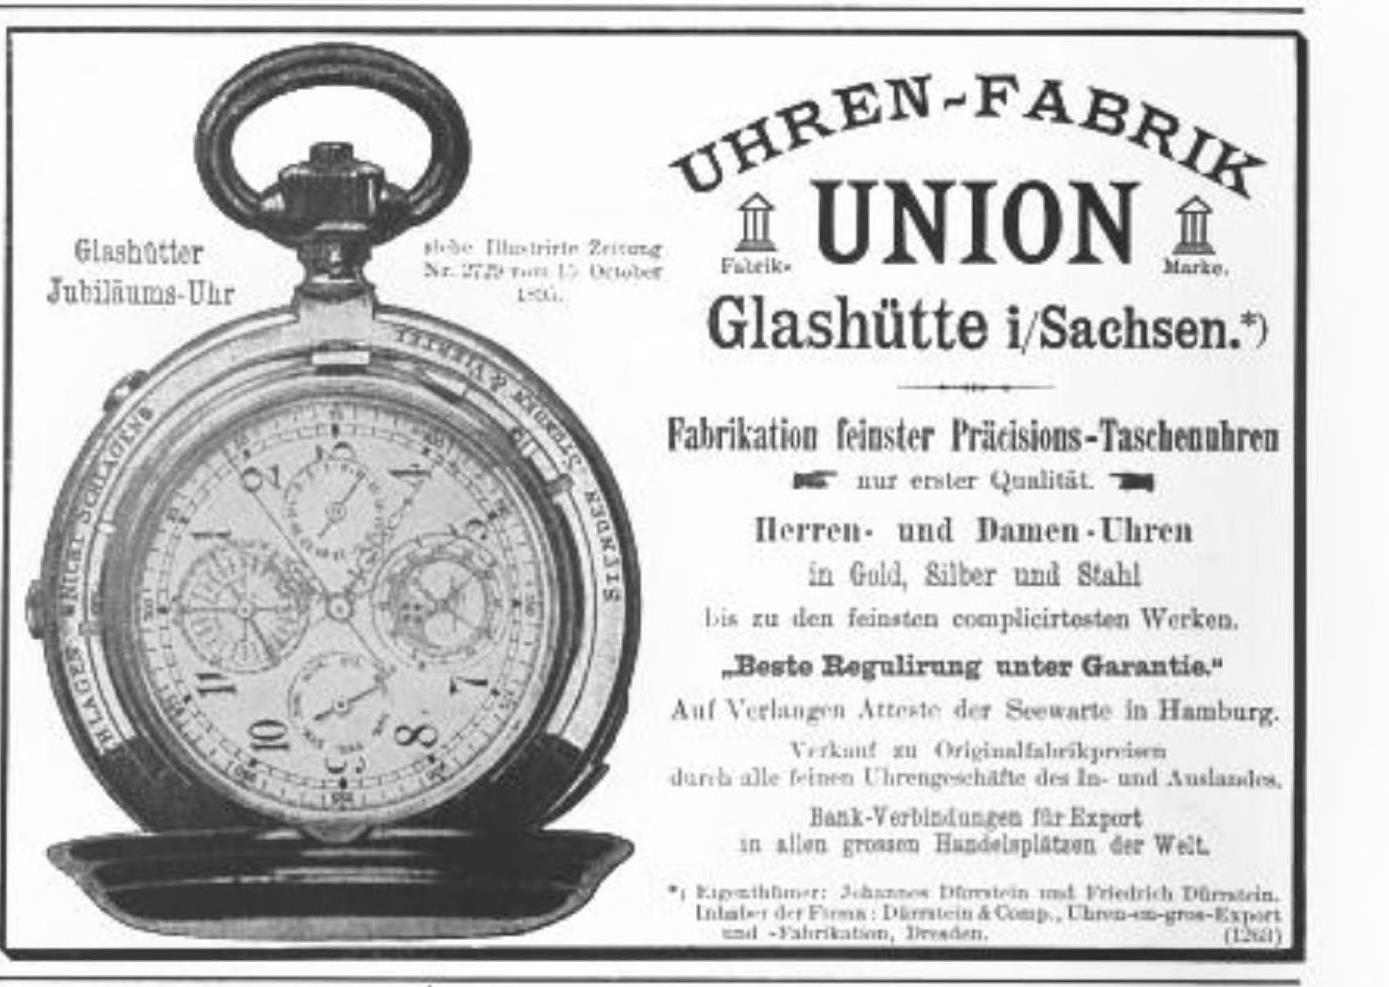 Union 1897 174.jpg